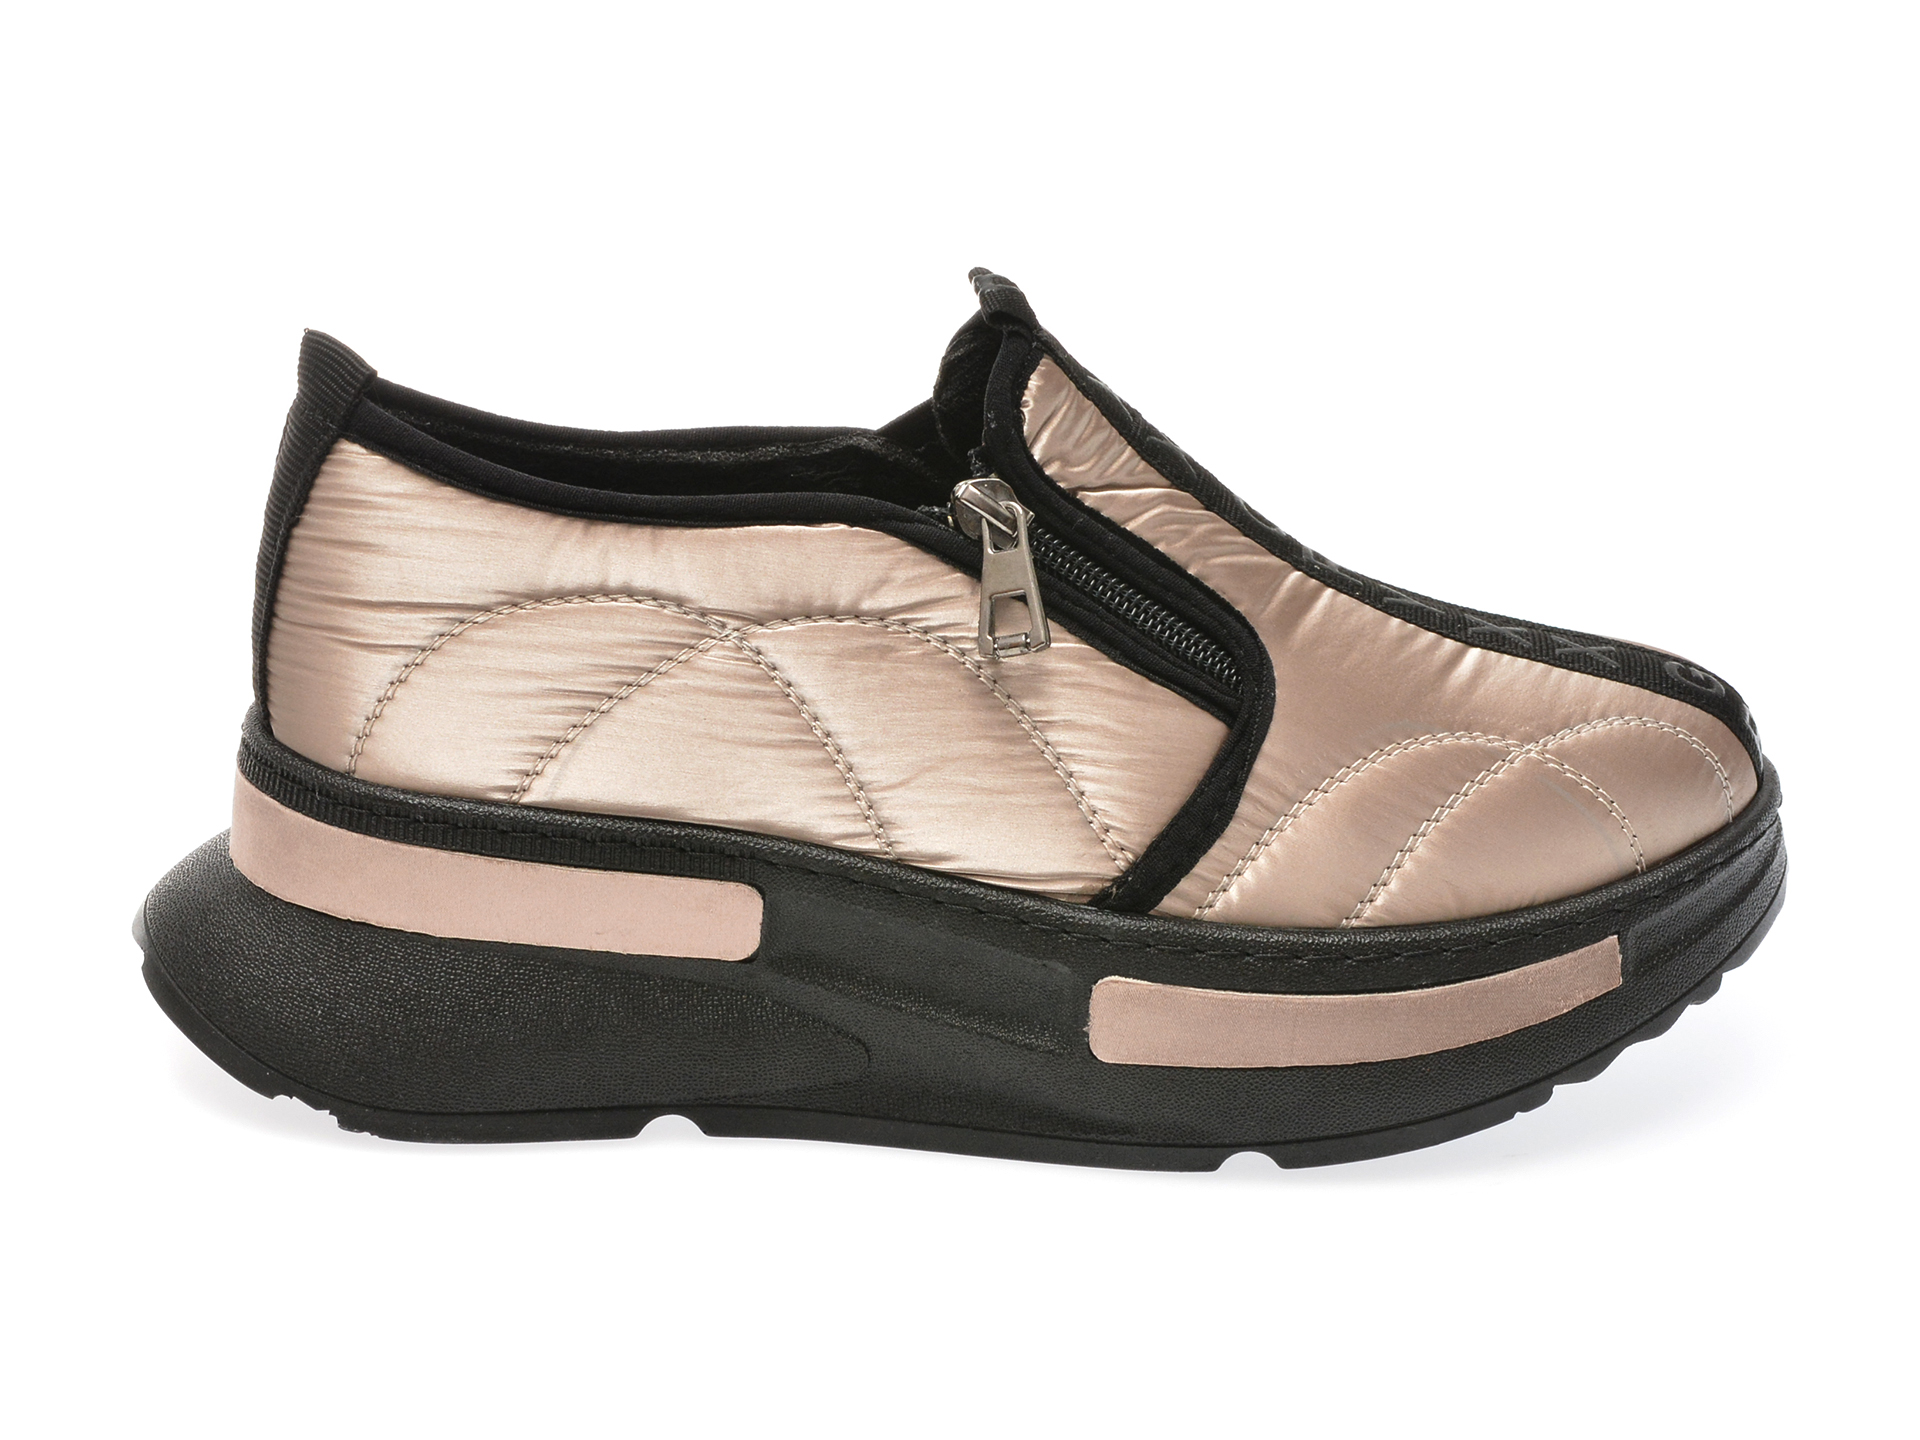 Pantofi Casual Gryxx Aurii, 2284, Din Material Textil